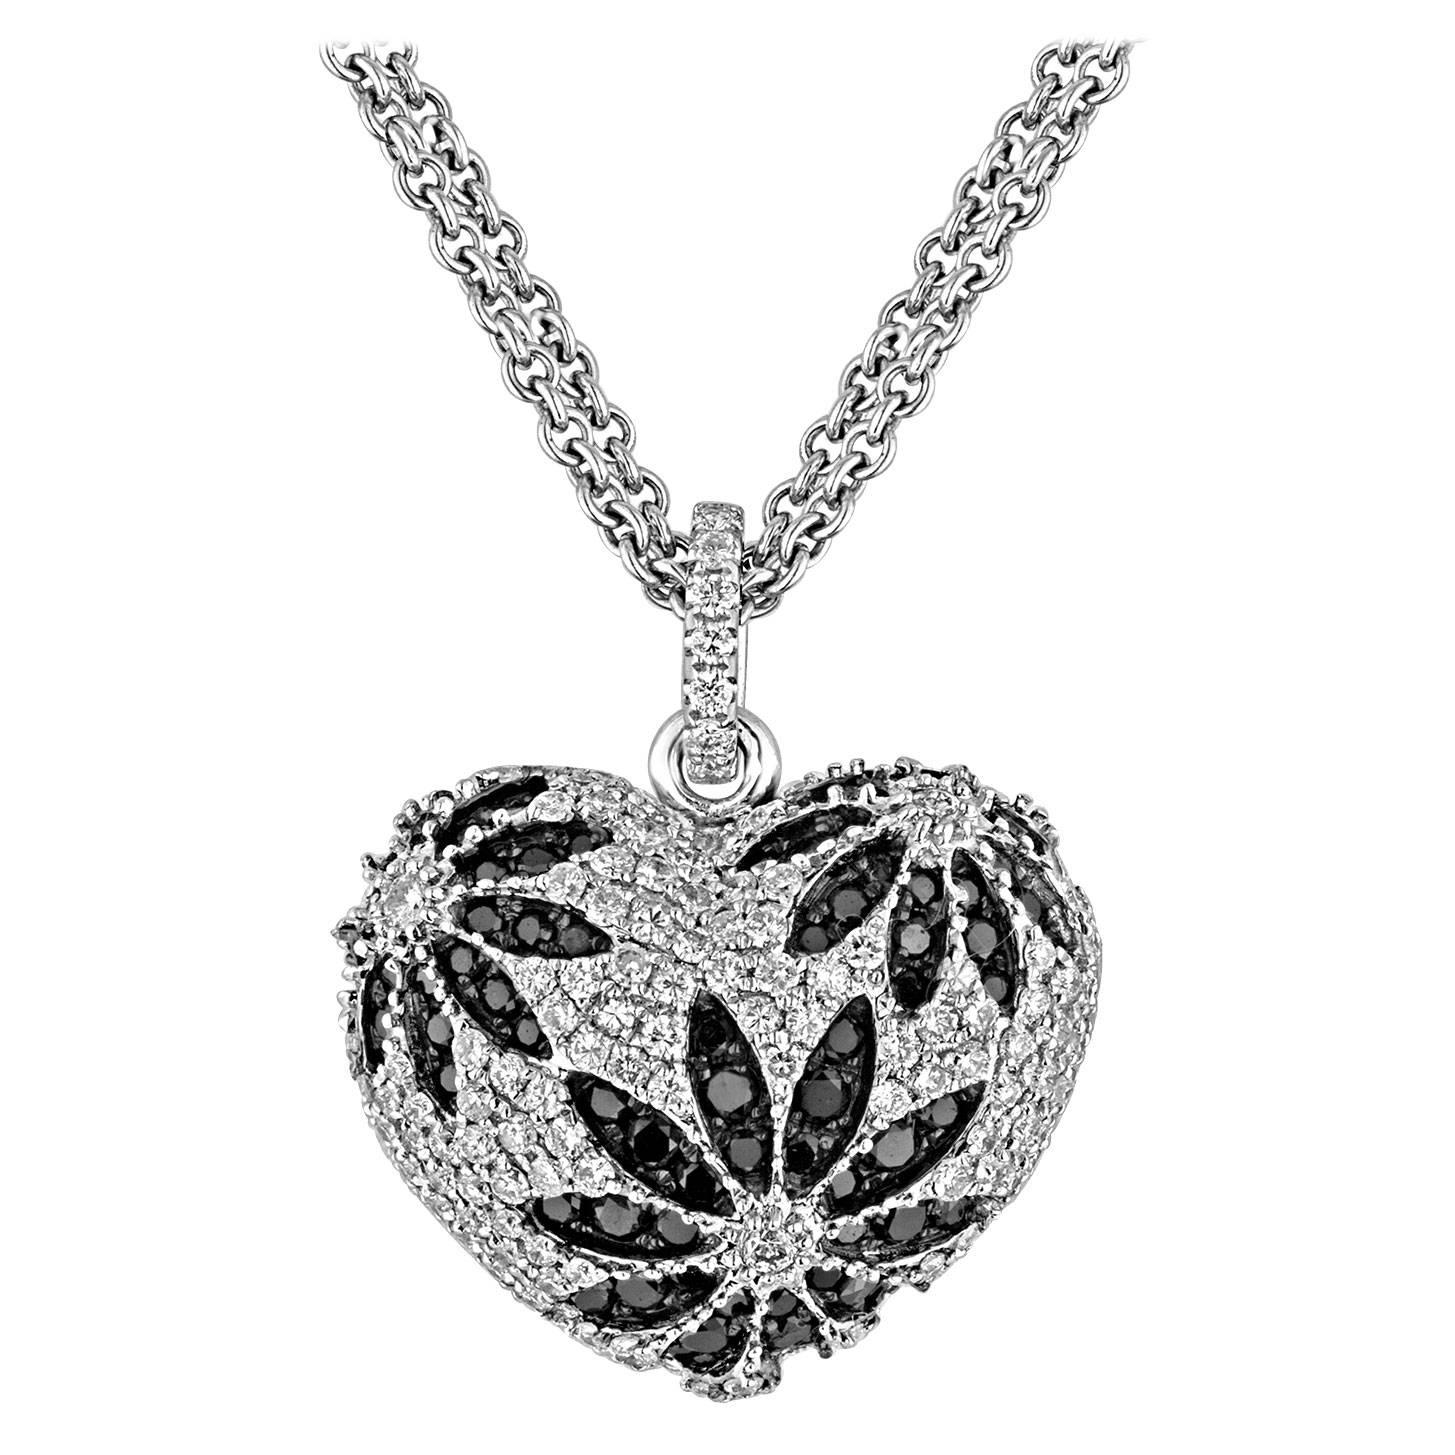 Collier pendentif cœur en or avec diamants noirs et blancs de 1,84 carat